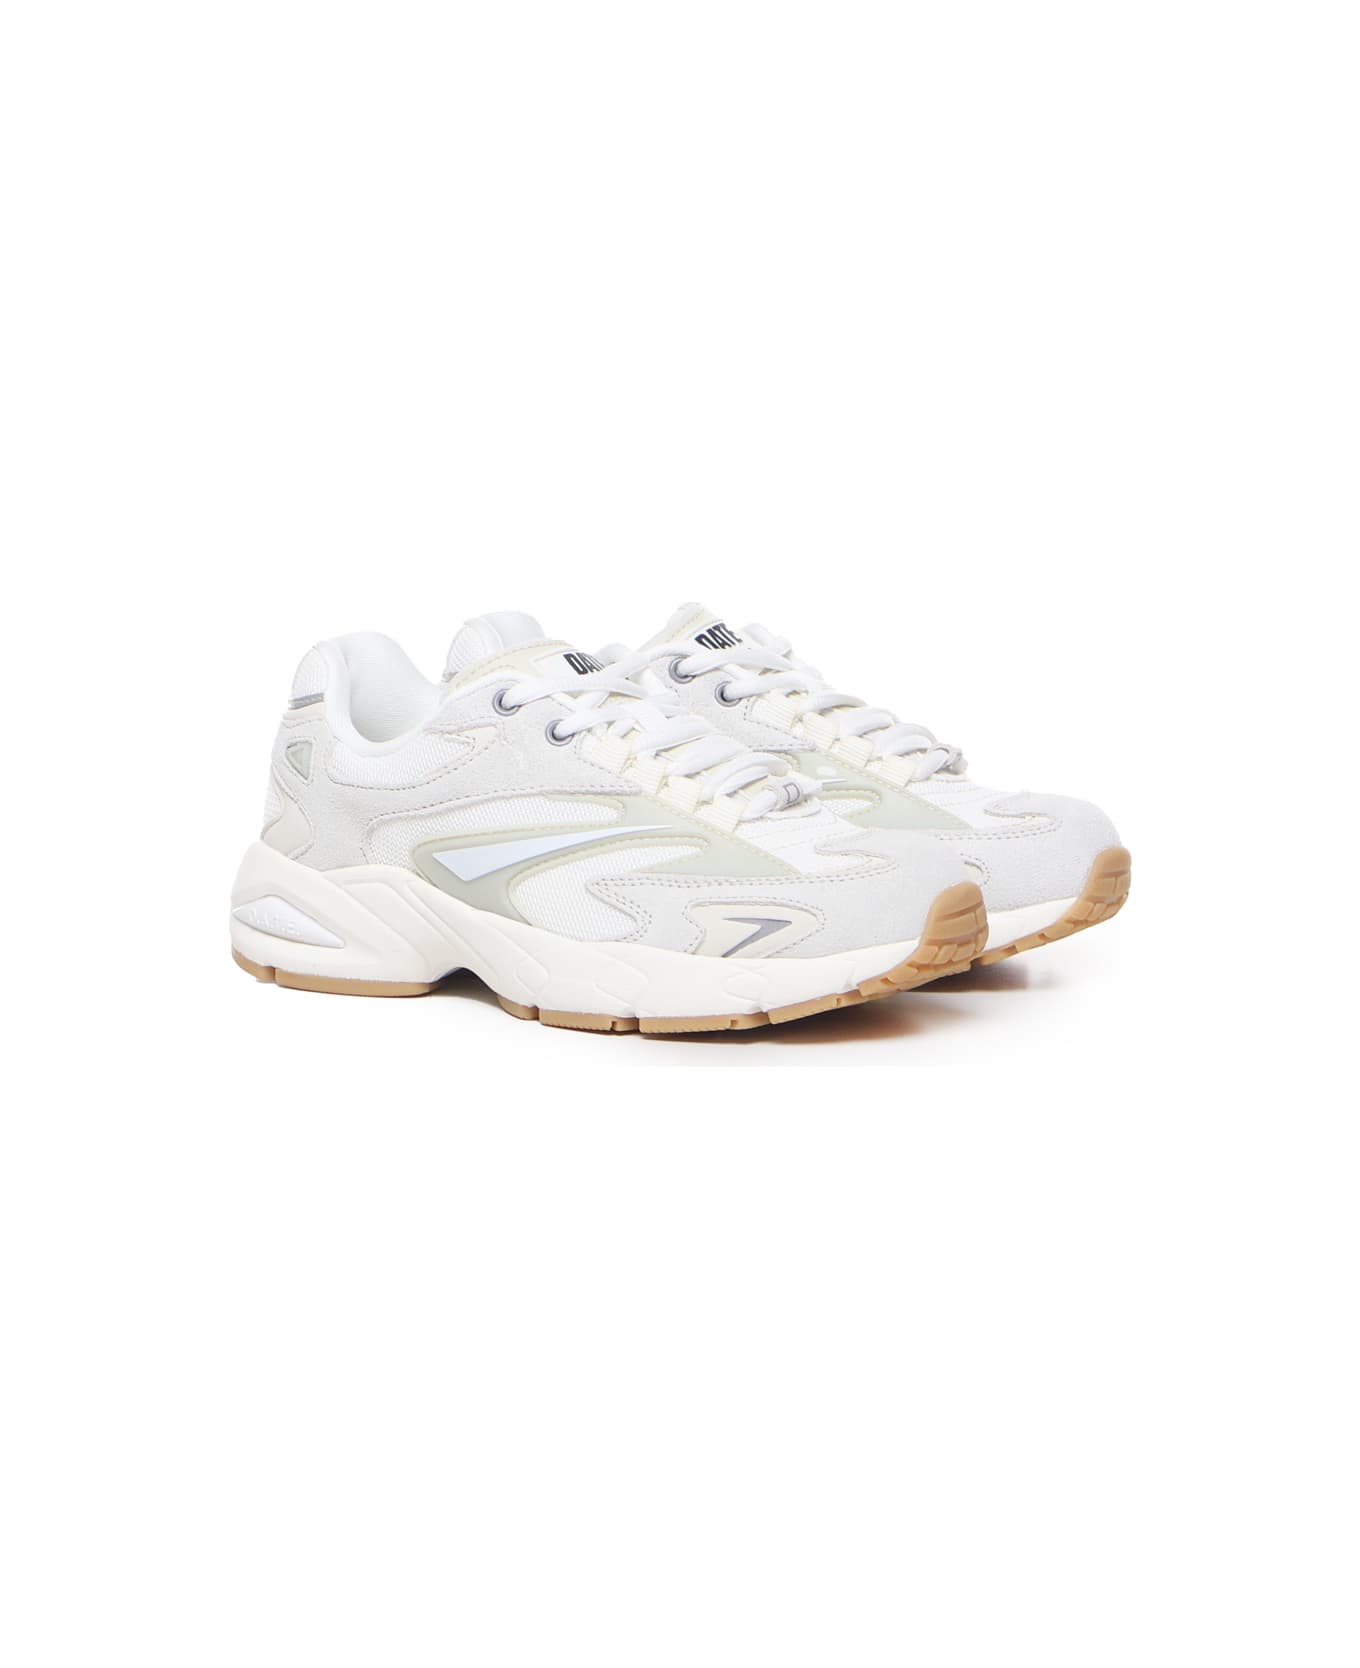 D.A.T.E. Sn23 Sneakers - White